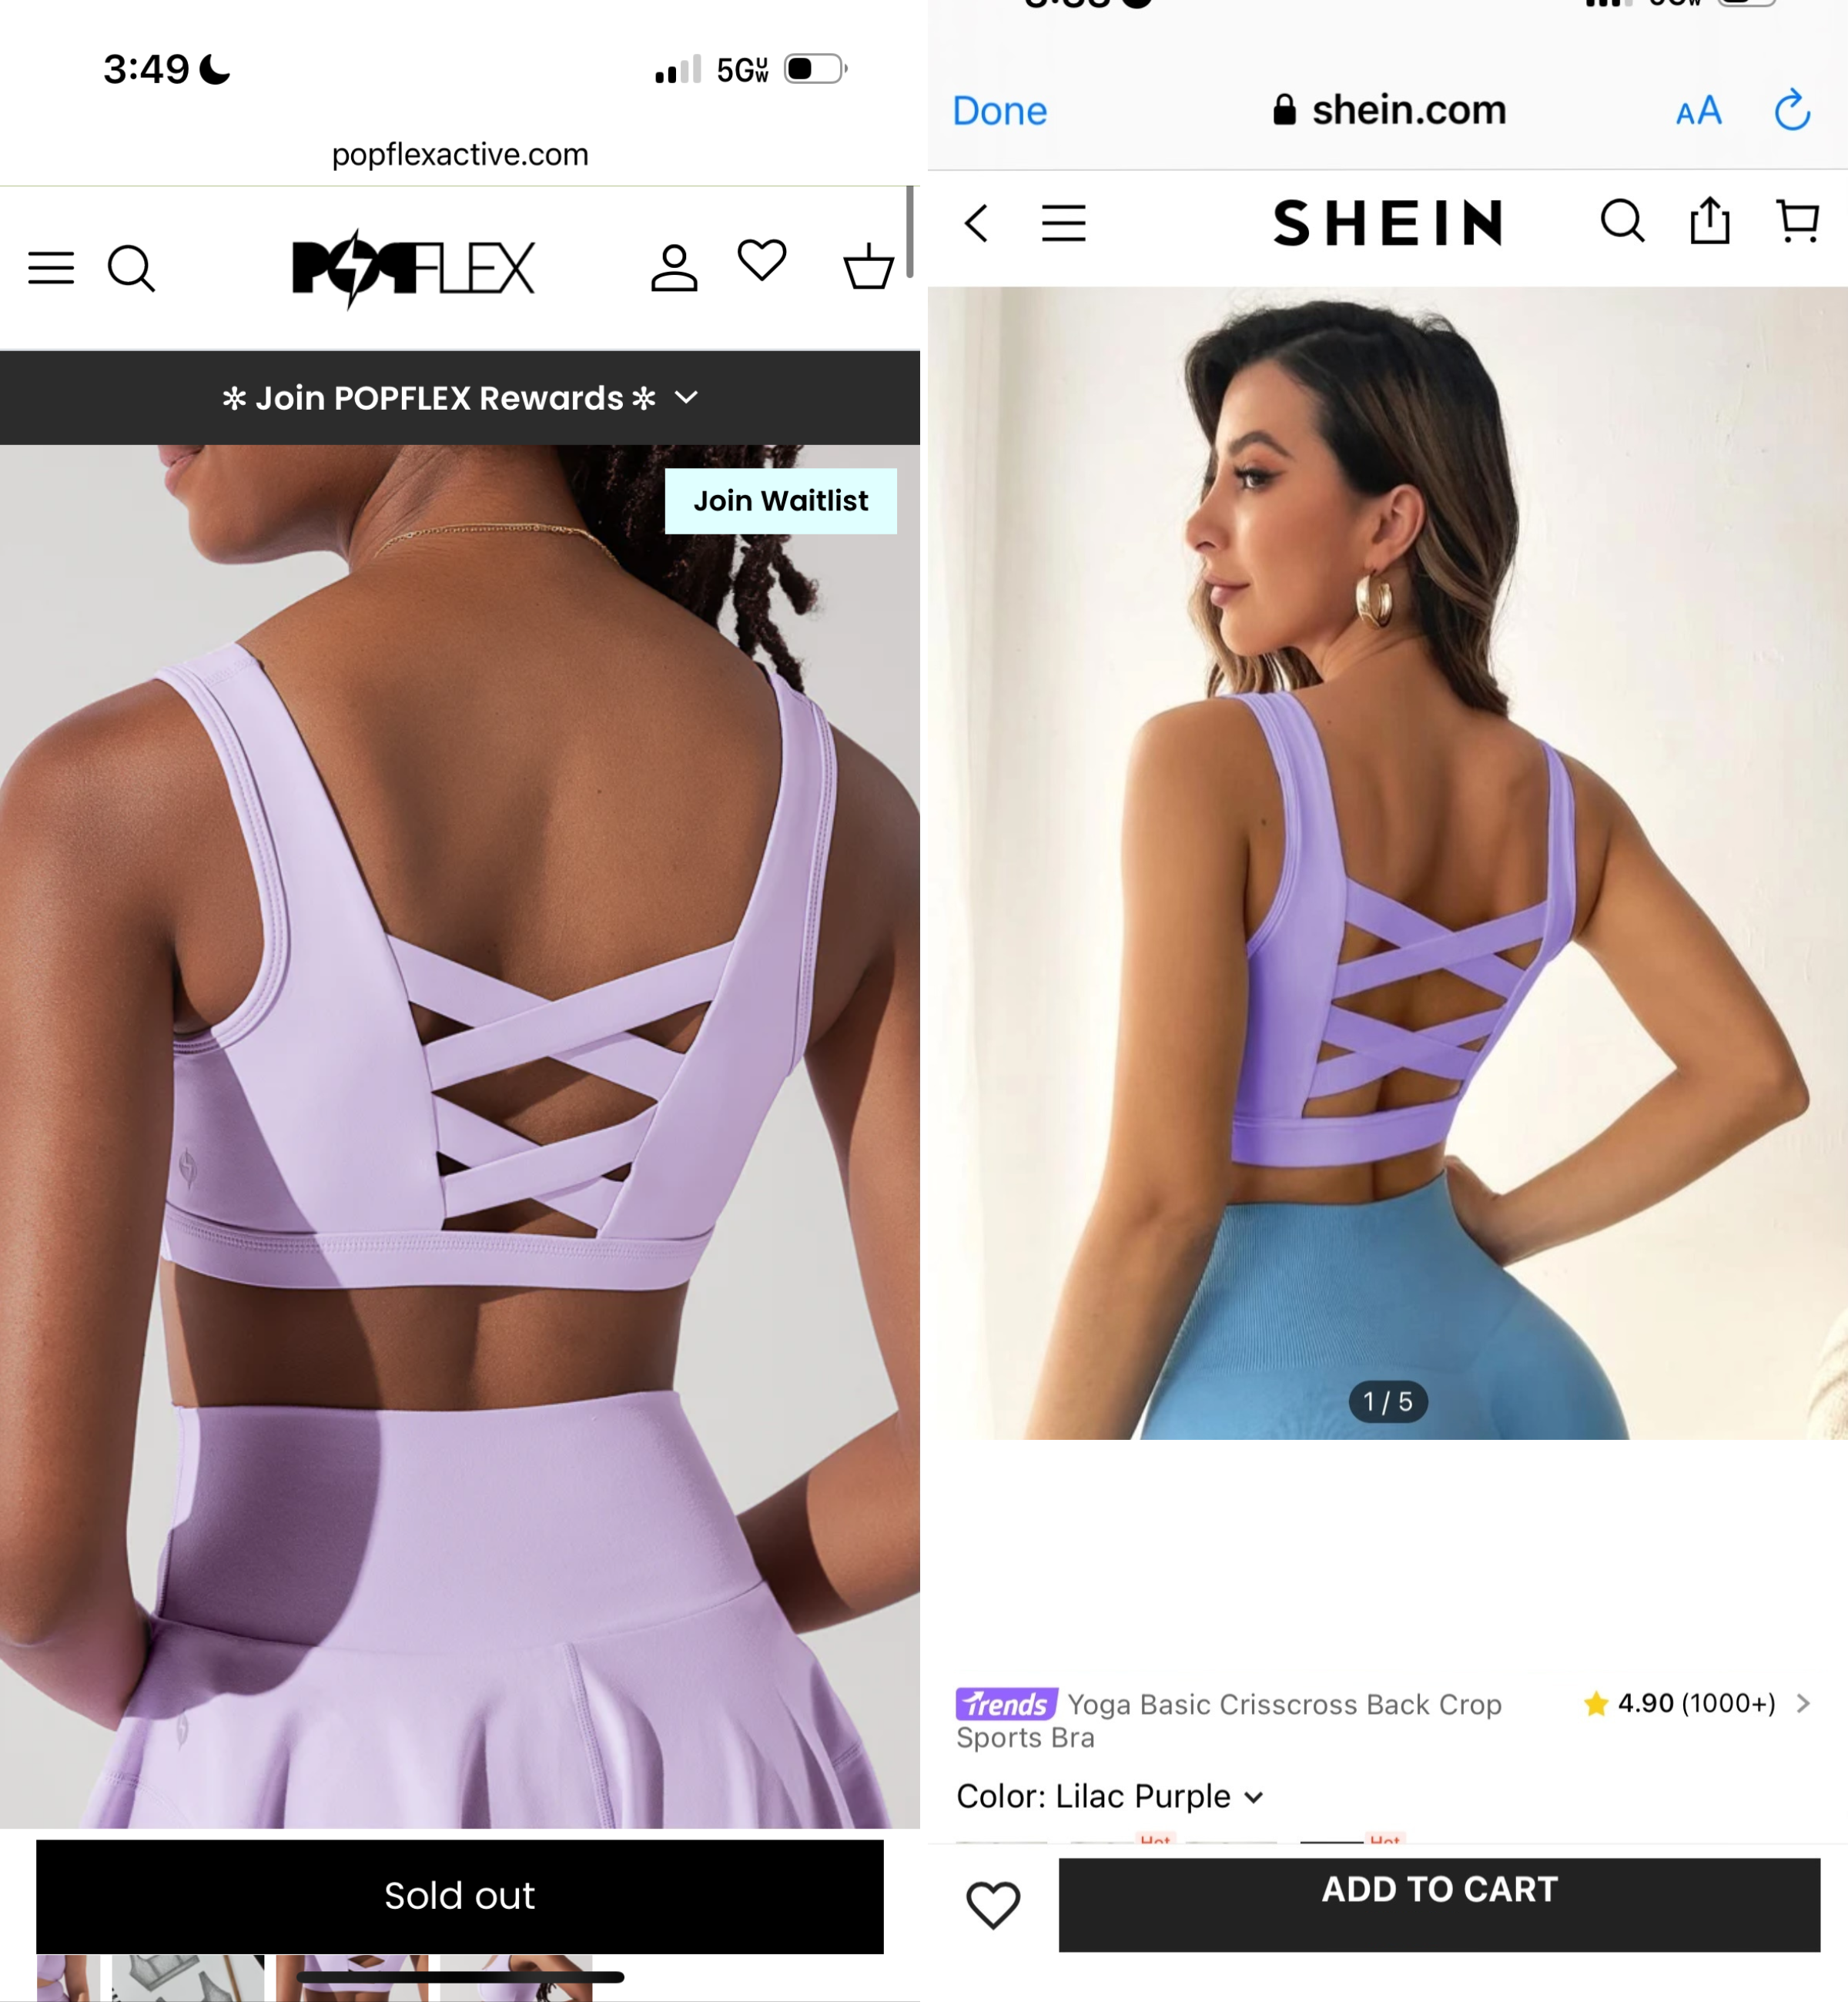 popflex corset bra shein stealing designs